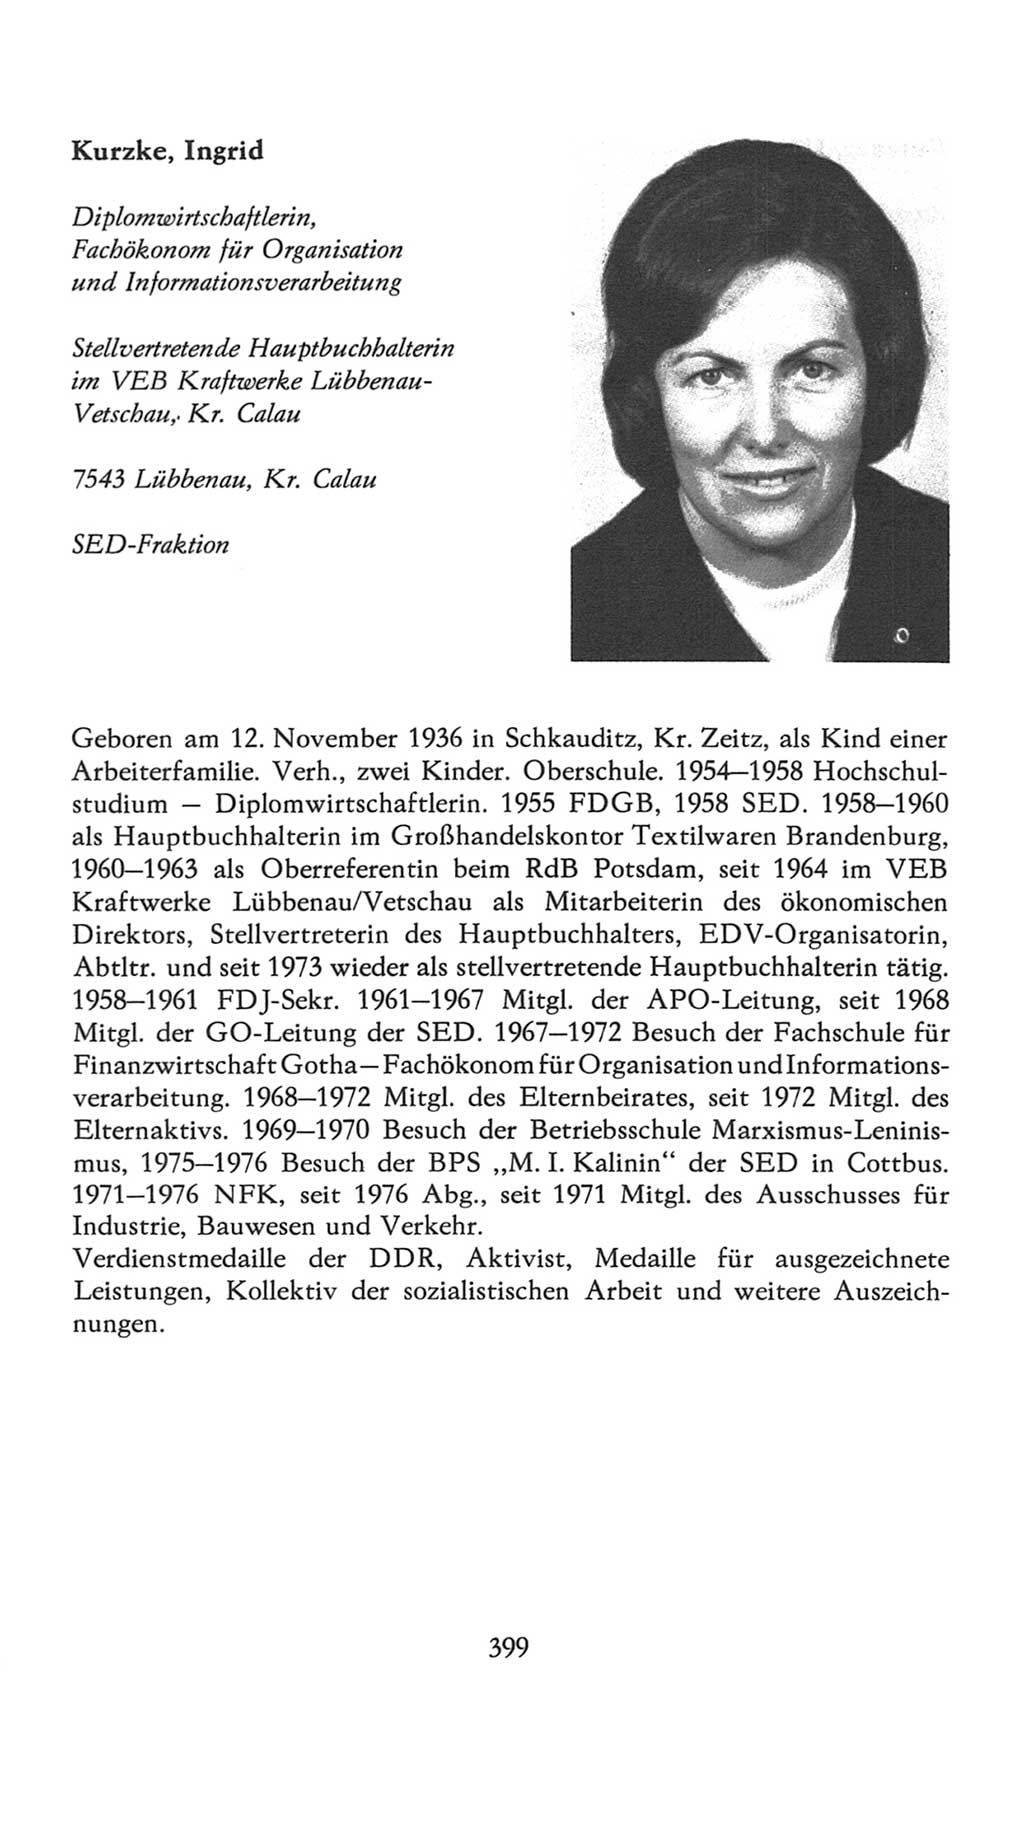 Volkskammer (VK) der Deutschen Demokratischen Republik (DDR), 7. Wahlperiode 1976-1981, Seite 399 (VK. DDR 7. WP. 1976-1981, S. 399)